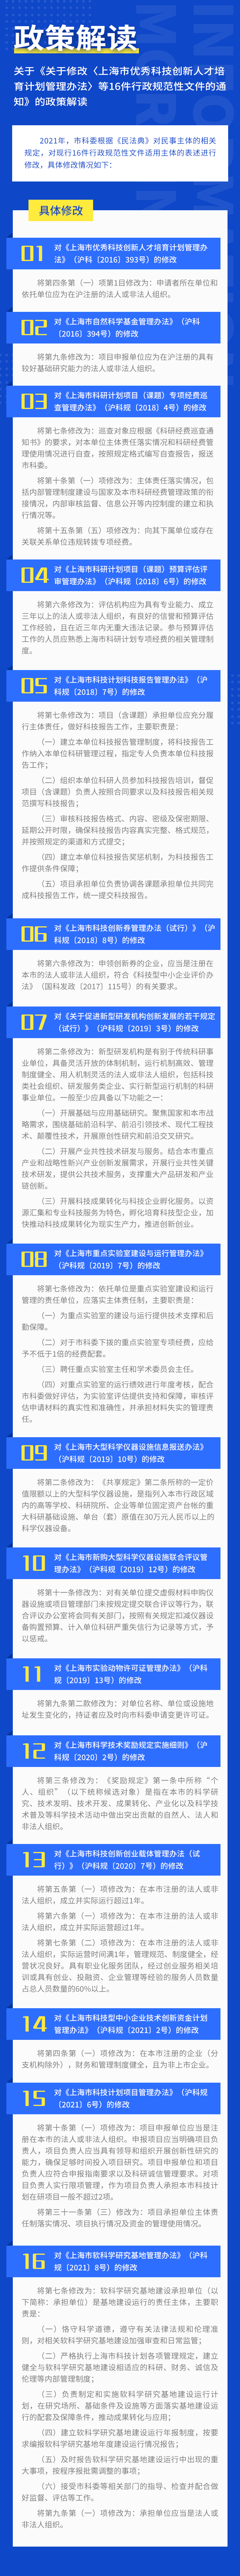 【图文解读】关于《关于修改〈上海市优秀科技创新人才培育计划管理办法〉等16件行政规范性文件的通知》的政策解读.jpg